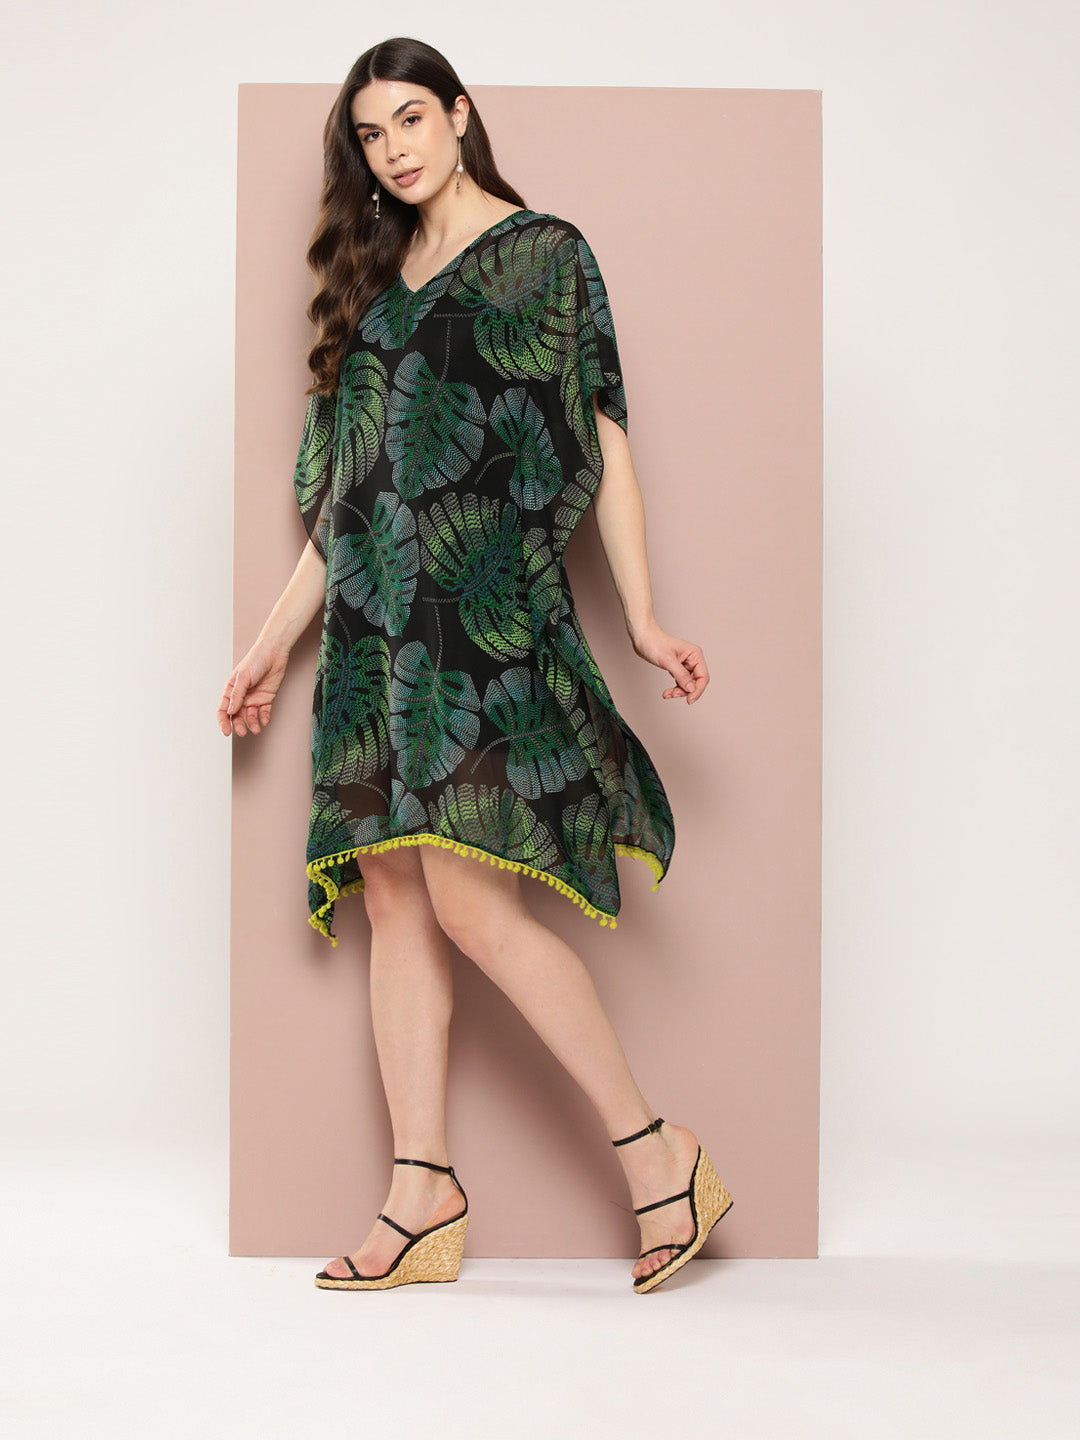 Green tropical print kaftan dress with tassels